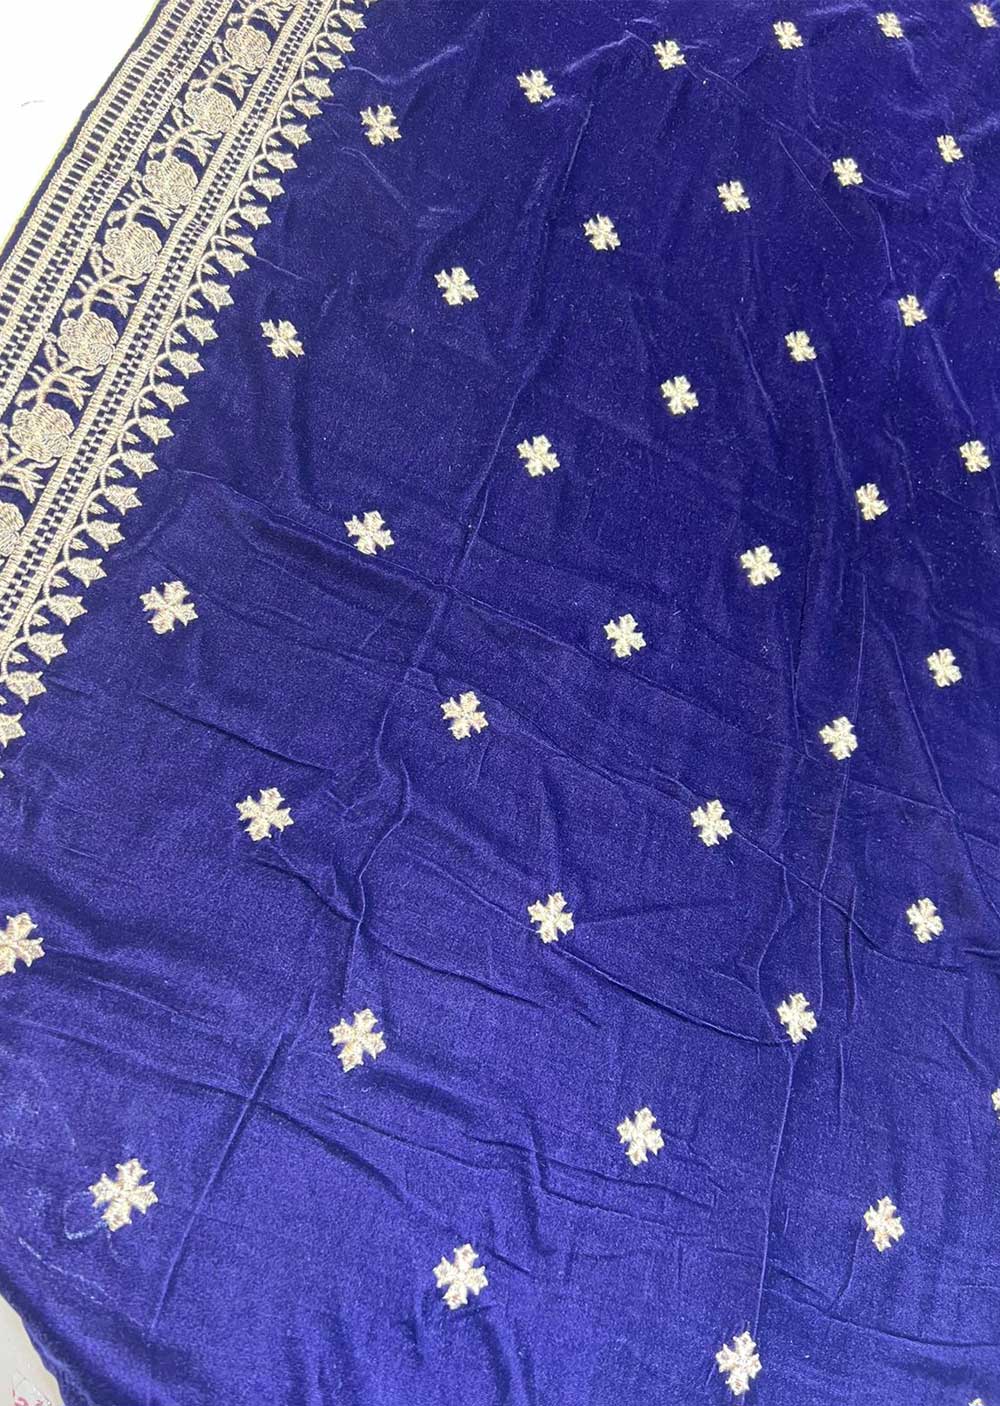 VLT-02 - Purple - Embroidered Velvet Shawl - Memsaab Online